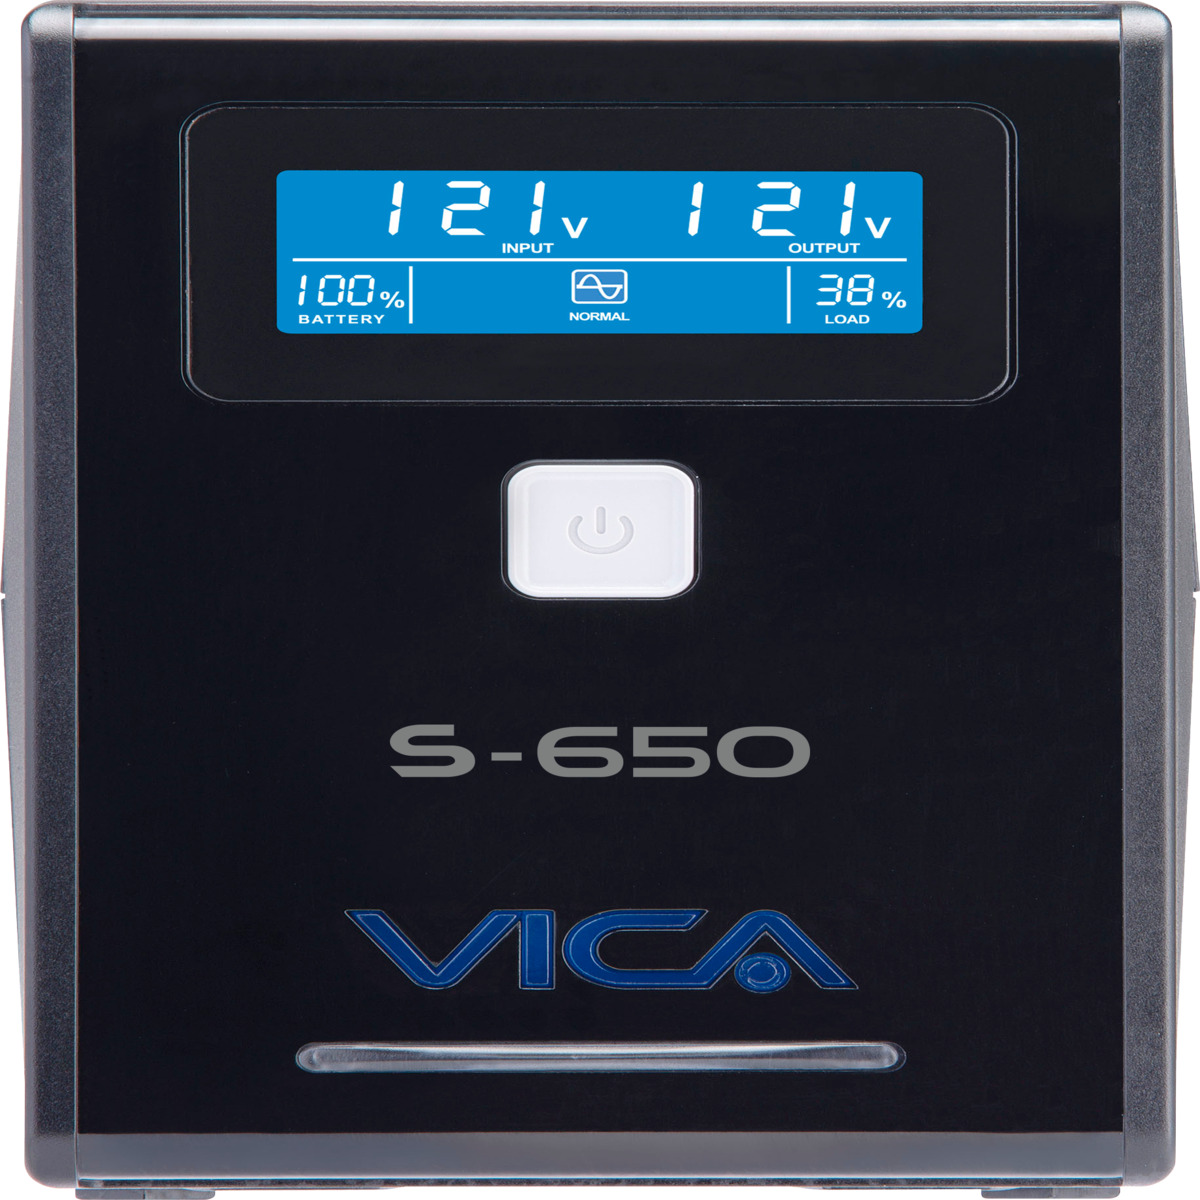 (ED) NO BREAK/UPS VICA 650VA/360W 8 TOMAS (4) REGU Y (4) RESP PANTALLA LCD (S 650)